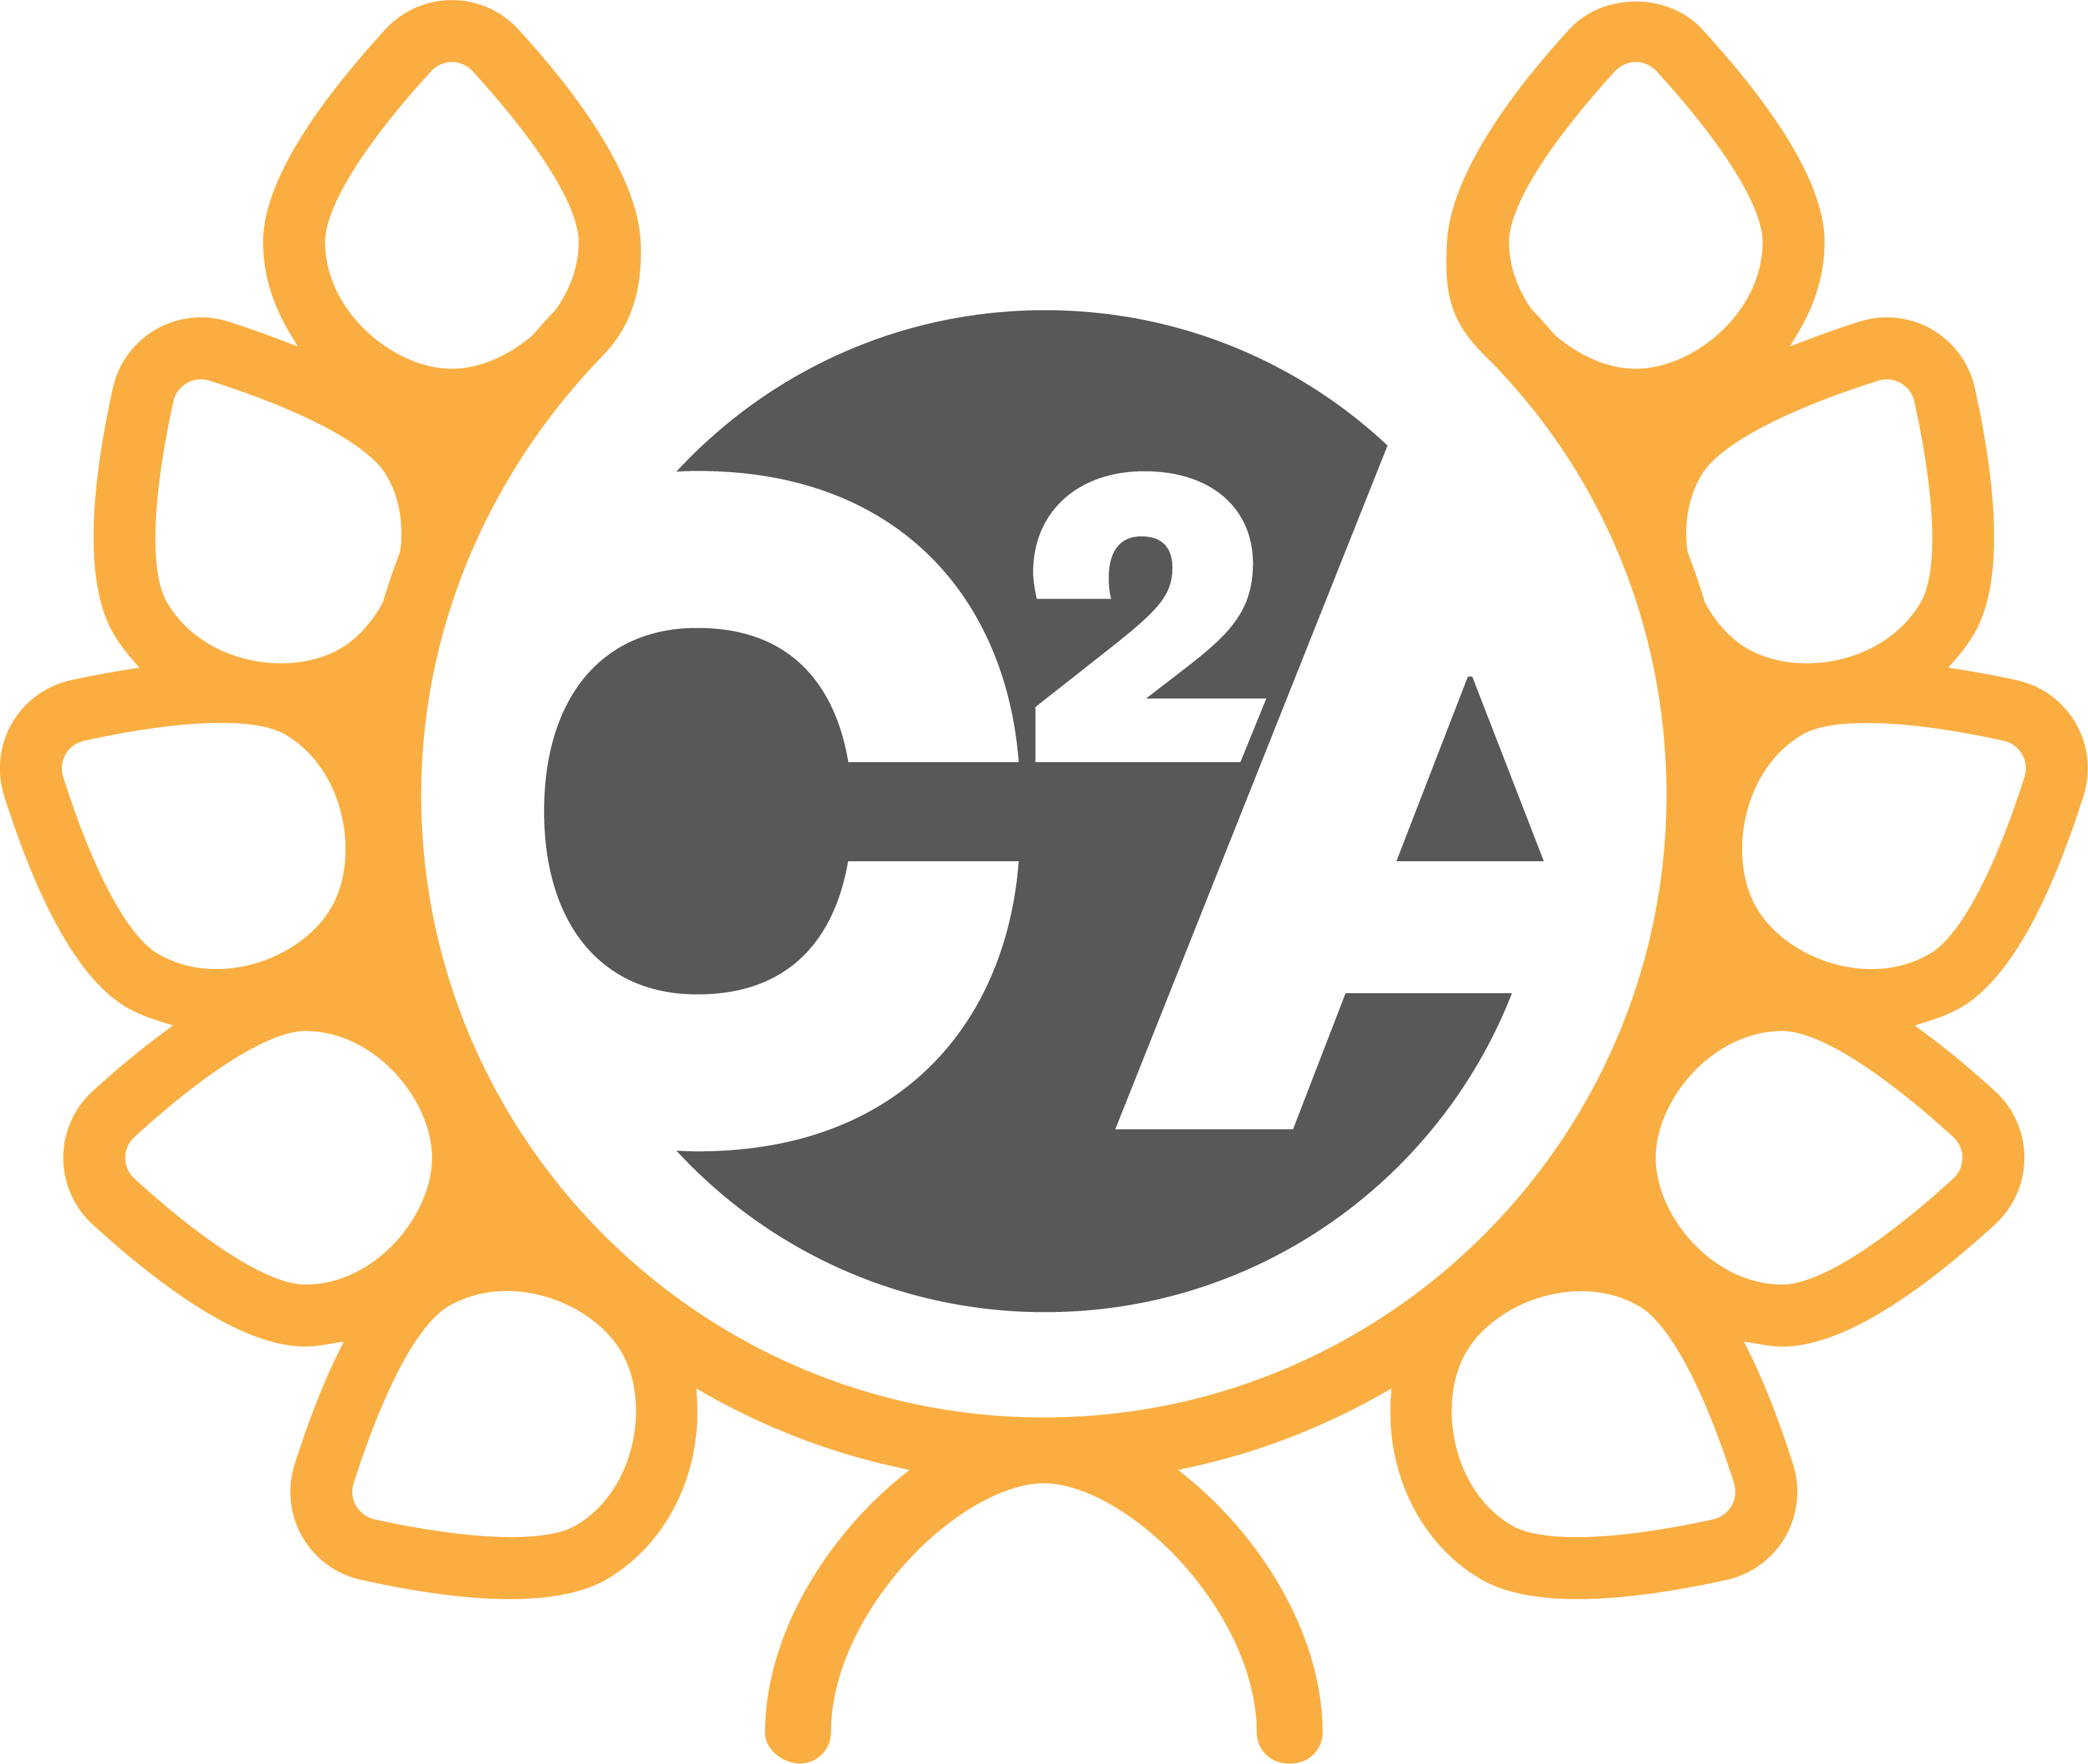 C2A-Badge-Blank